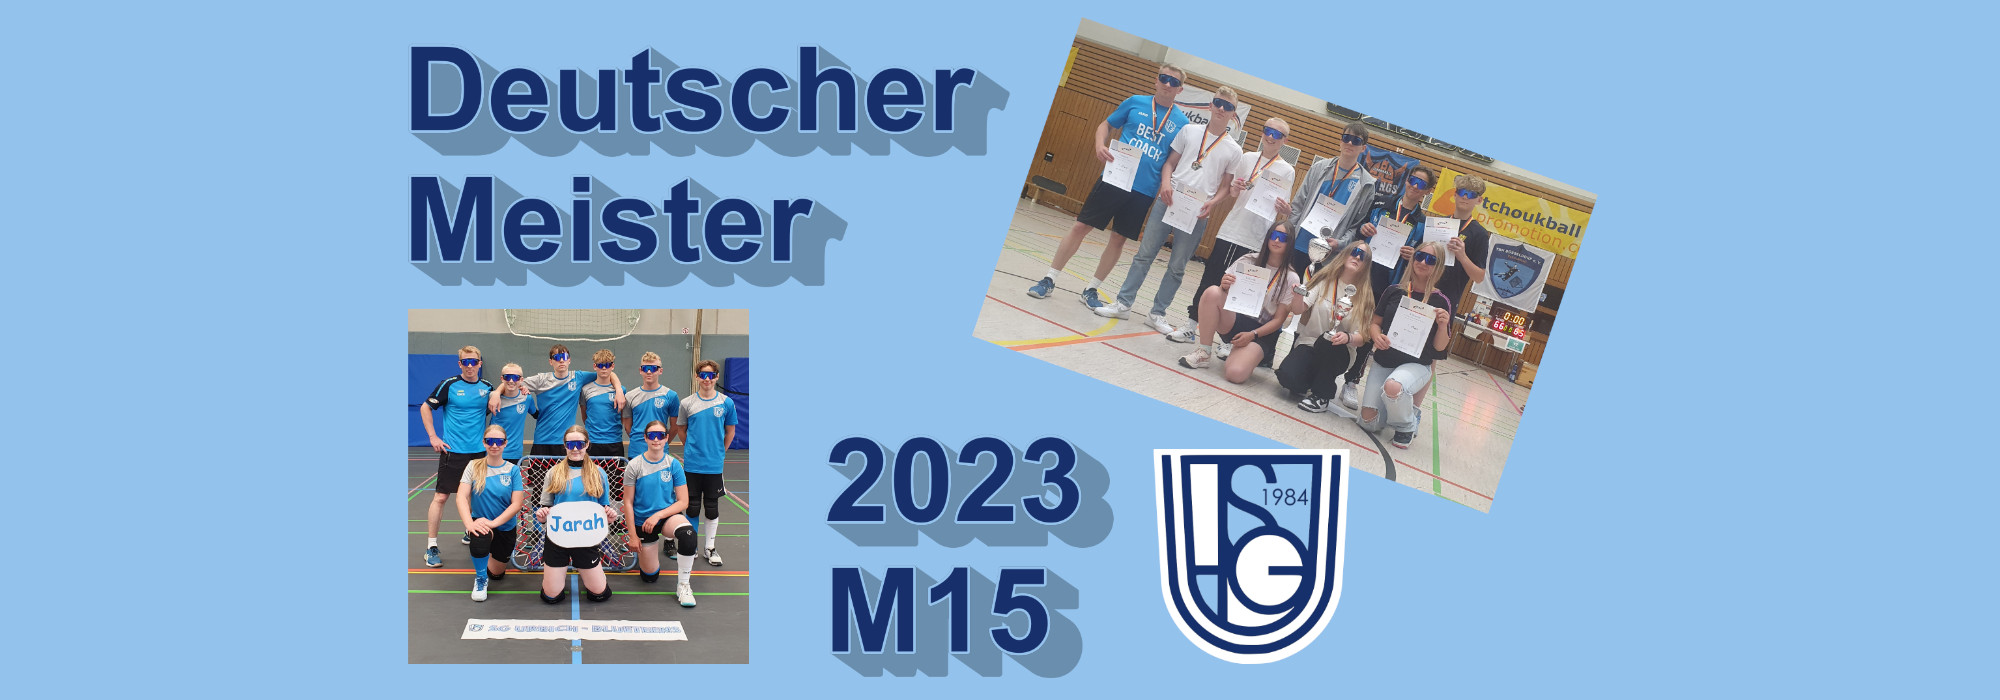 Deutsche Meister 2023 (Fotos: privat)